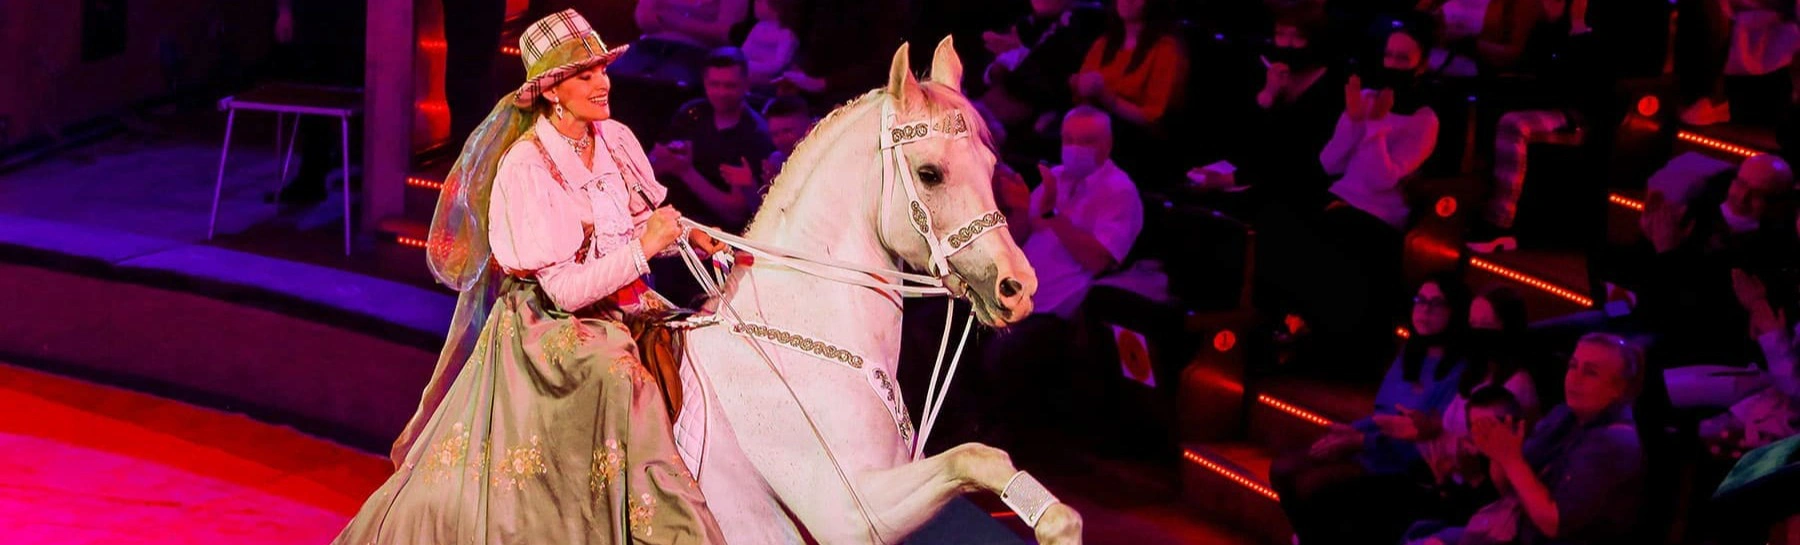 Московский цирк на Цветном бульваре подготовил новую программу «Почти серьезно»